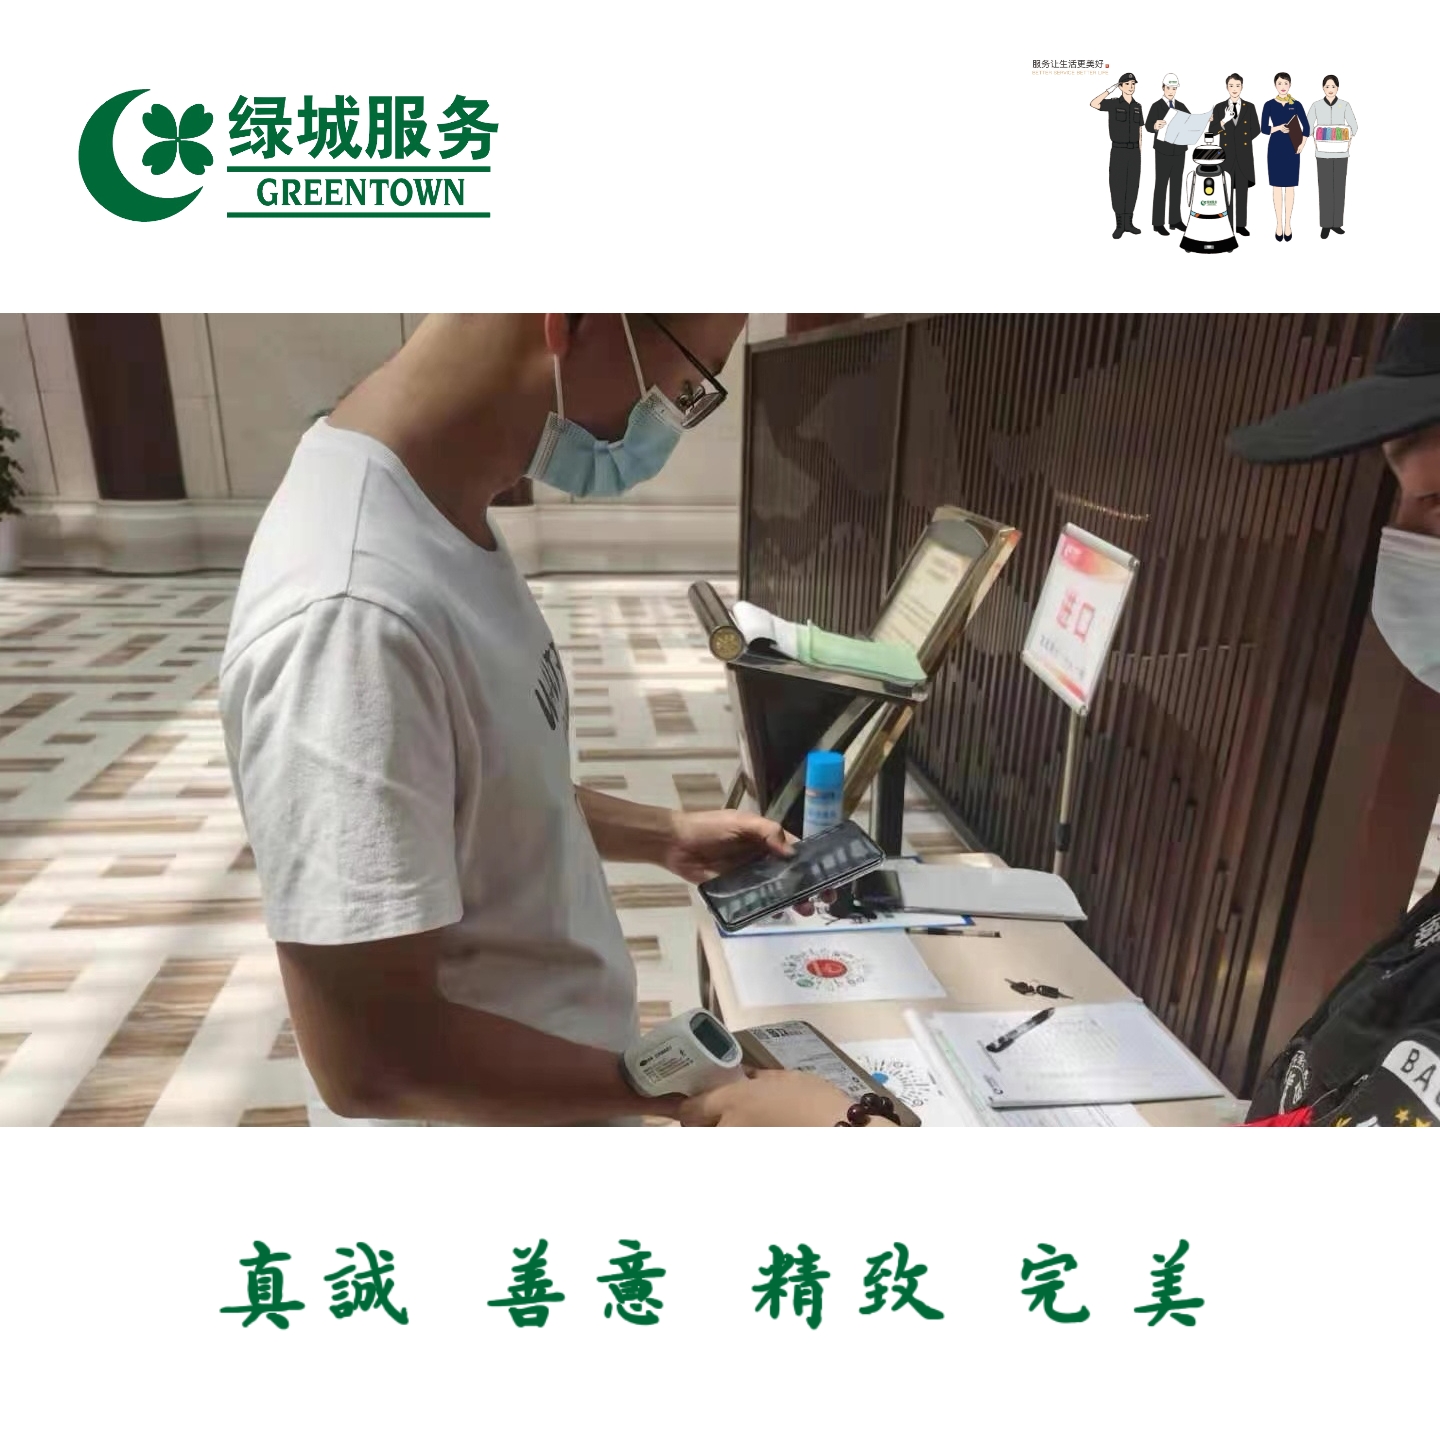 重庆两江绿城物业服务有限公司 环境照片活动图片